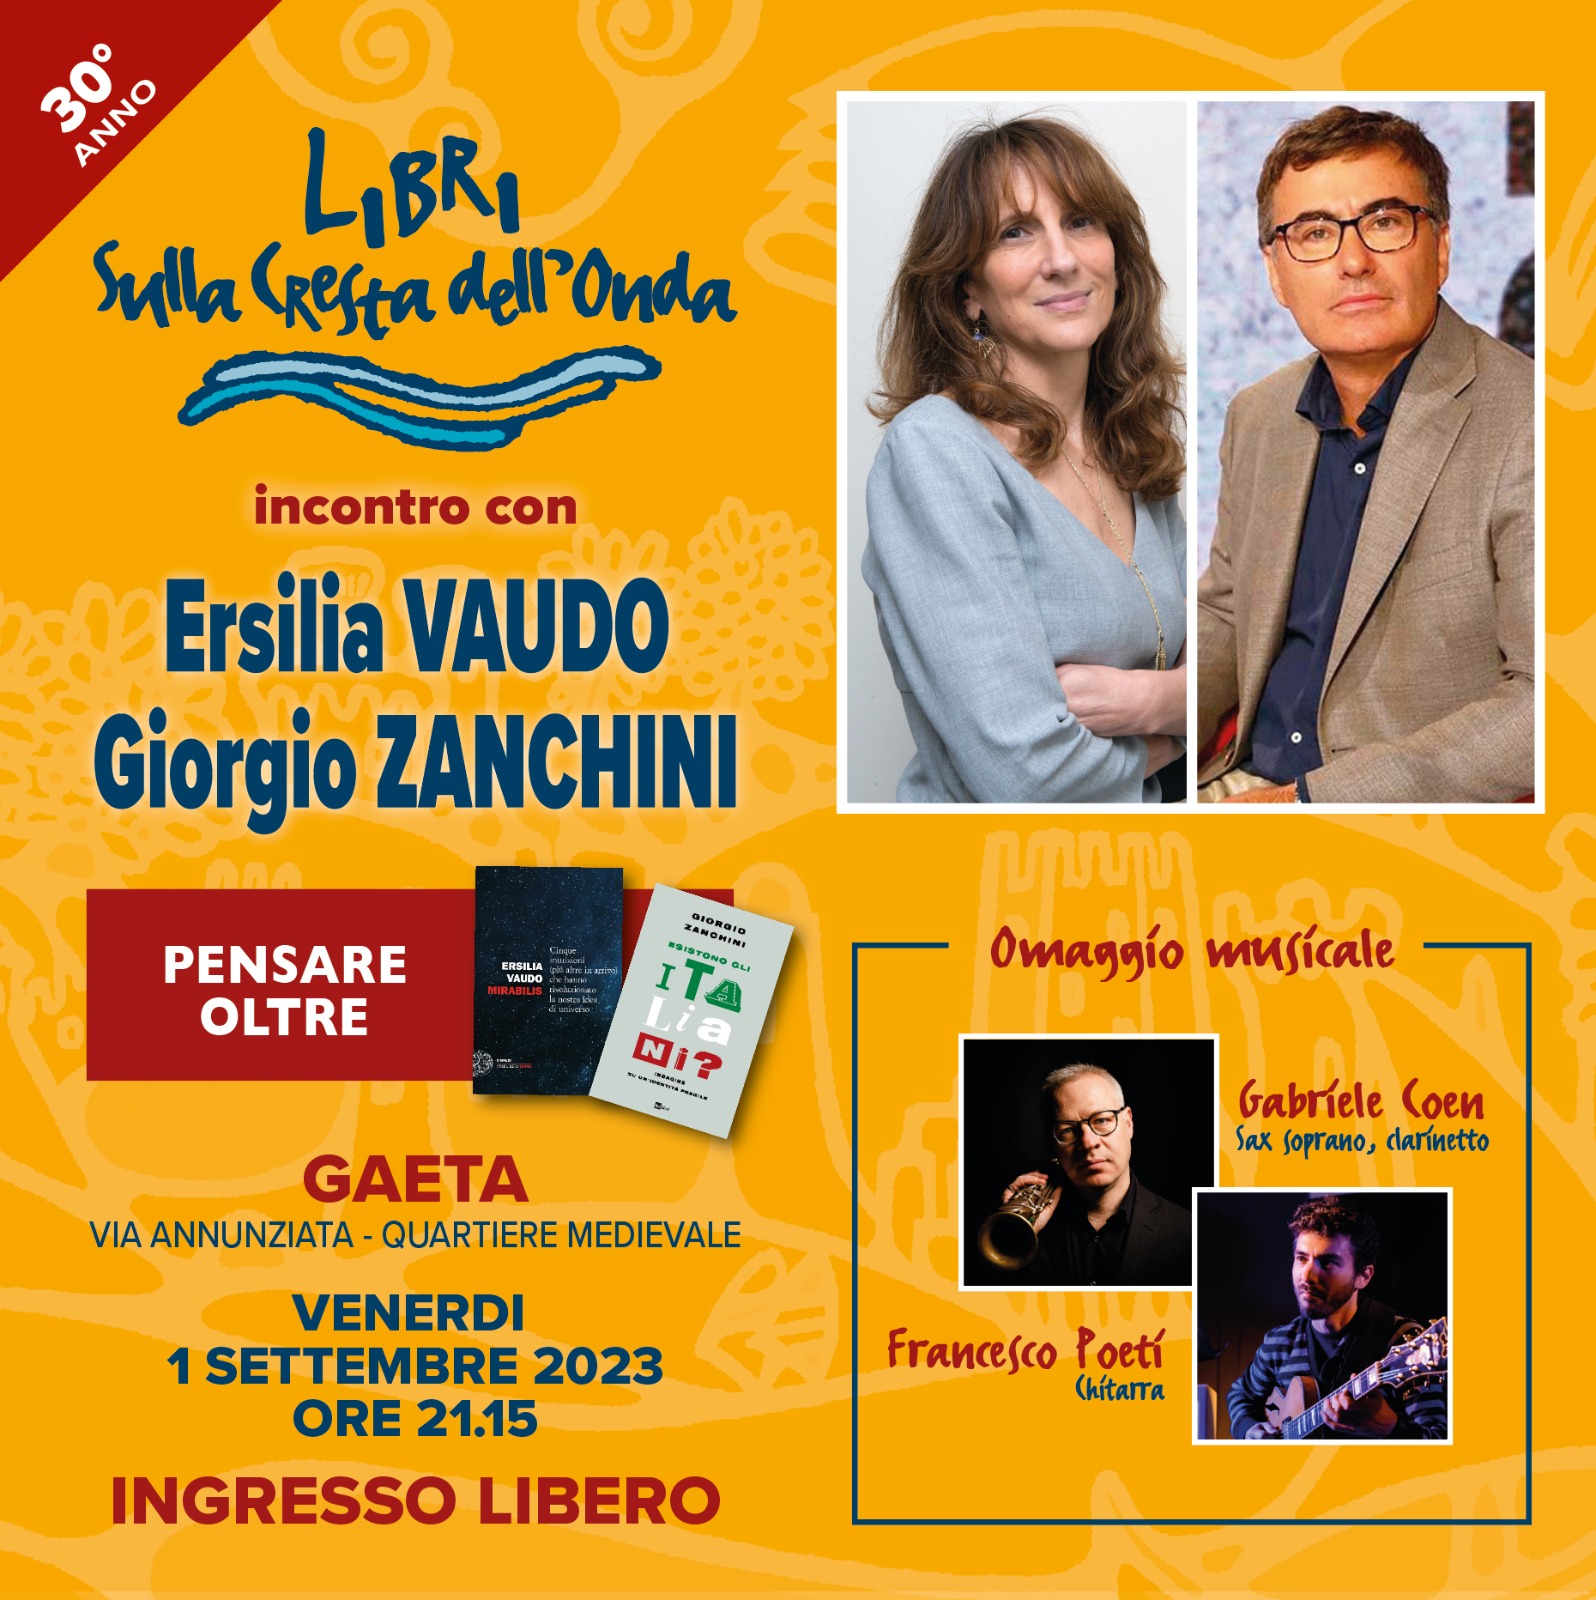 "Libri sulla Cresta dell'Onda" approda a Gaeta: venerdì 1° settembre protagonisti Ersilia Vaudo e Giorgio Zanchini